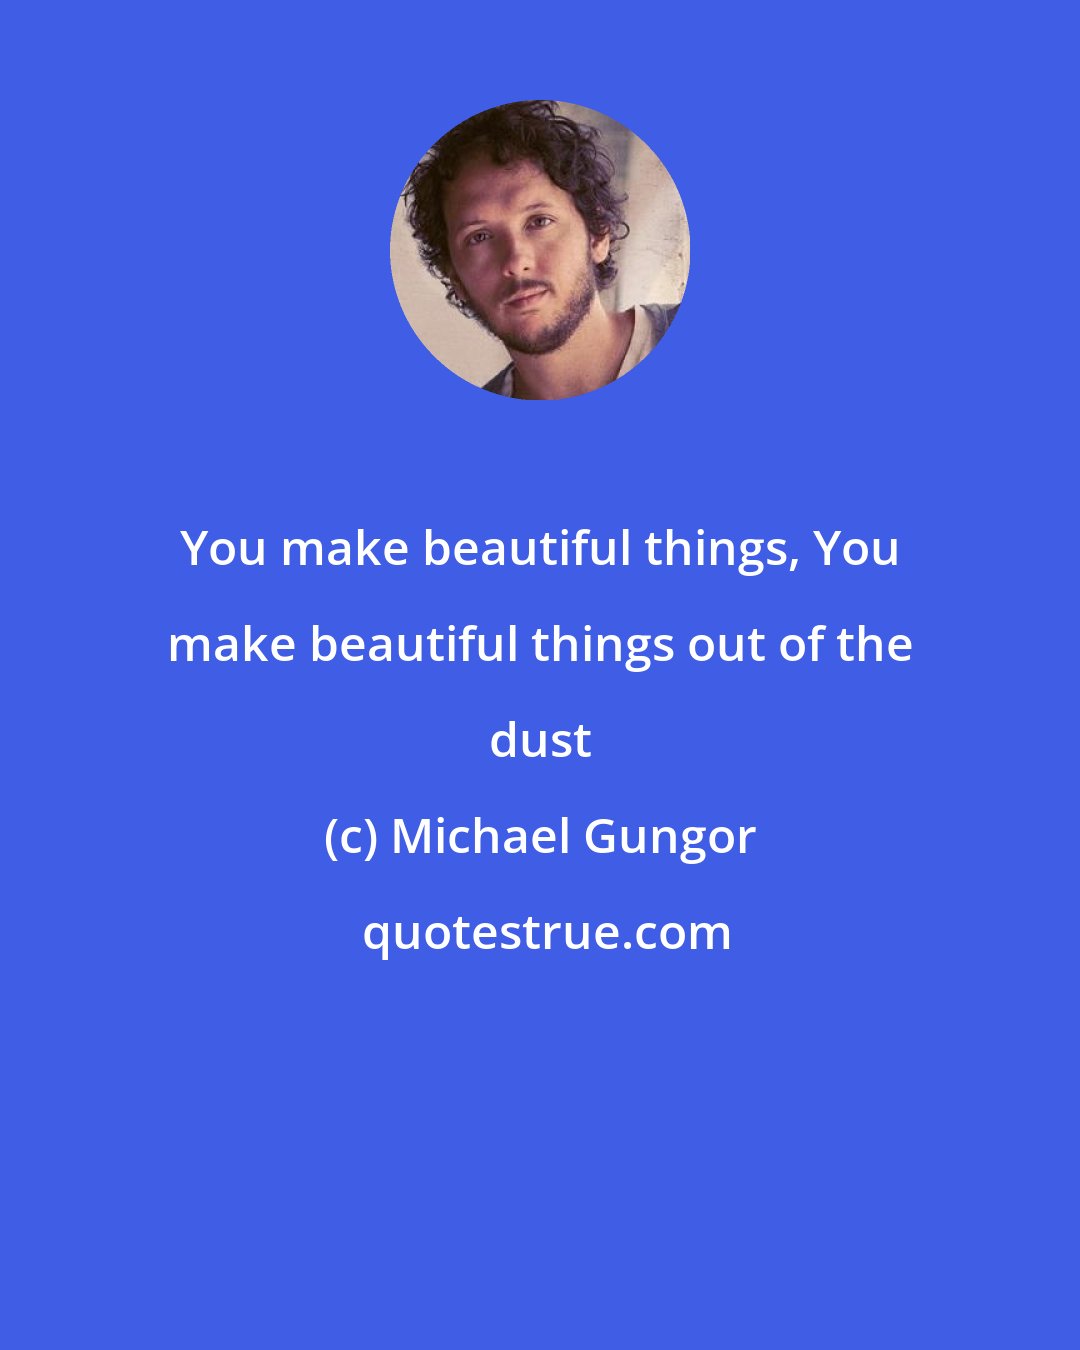 Michael Gungor: You make beautiful things, You make beautiful things out of the dust